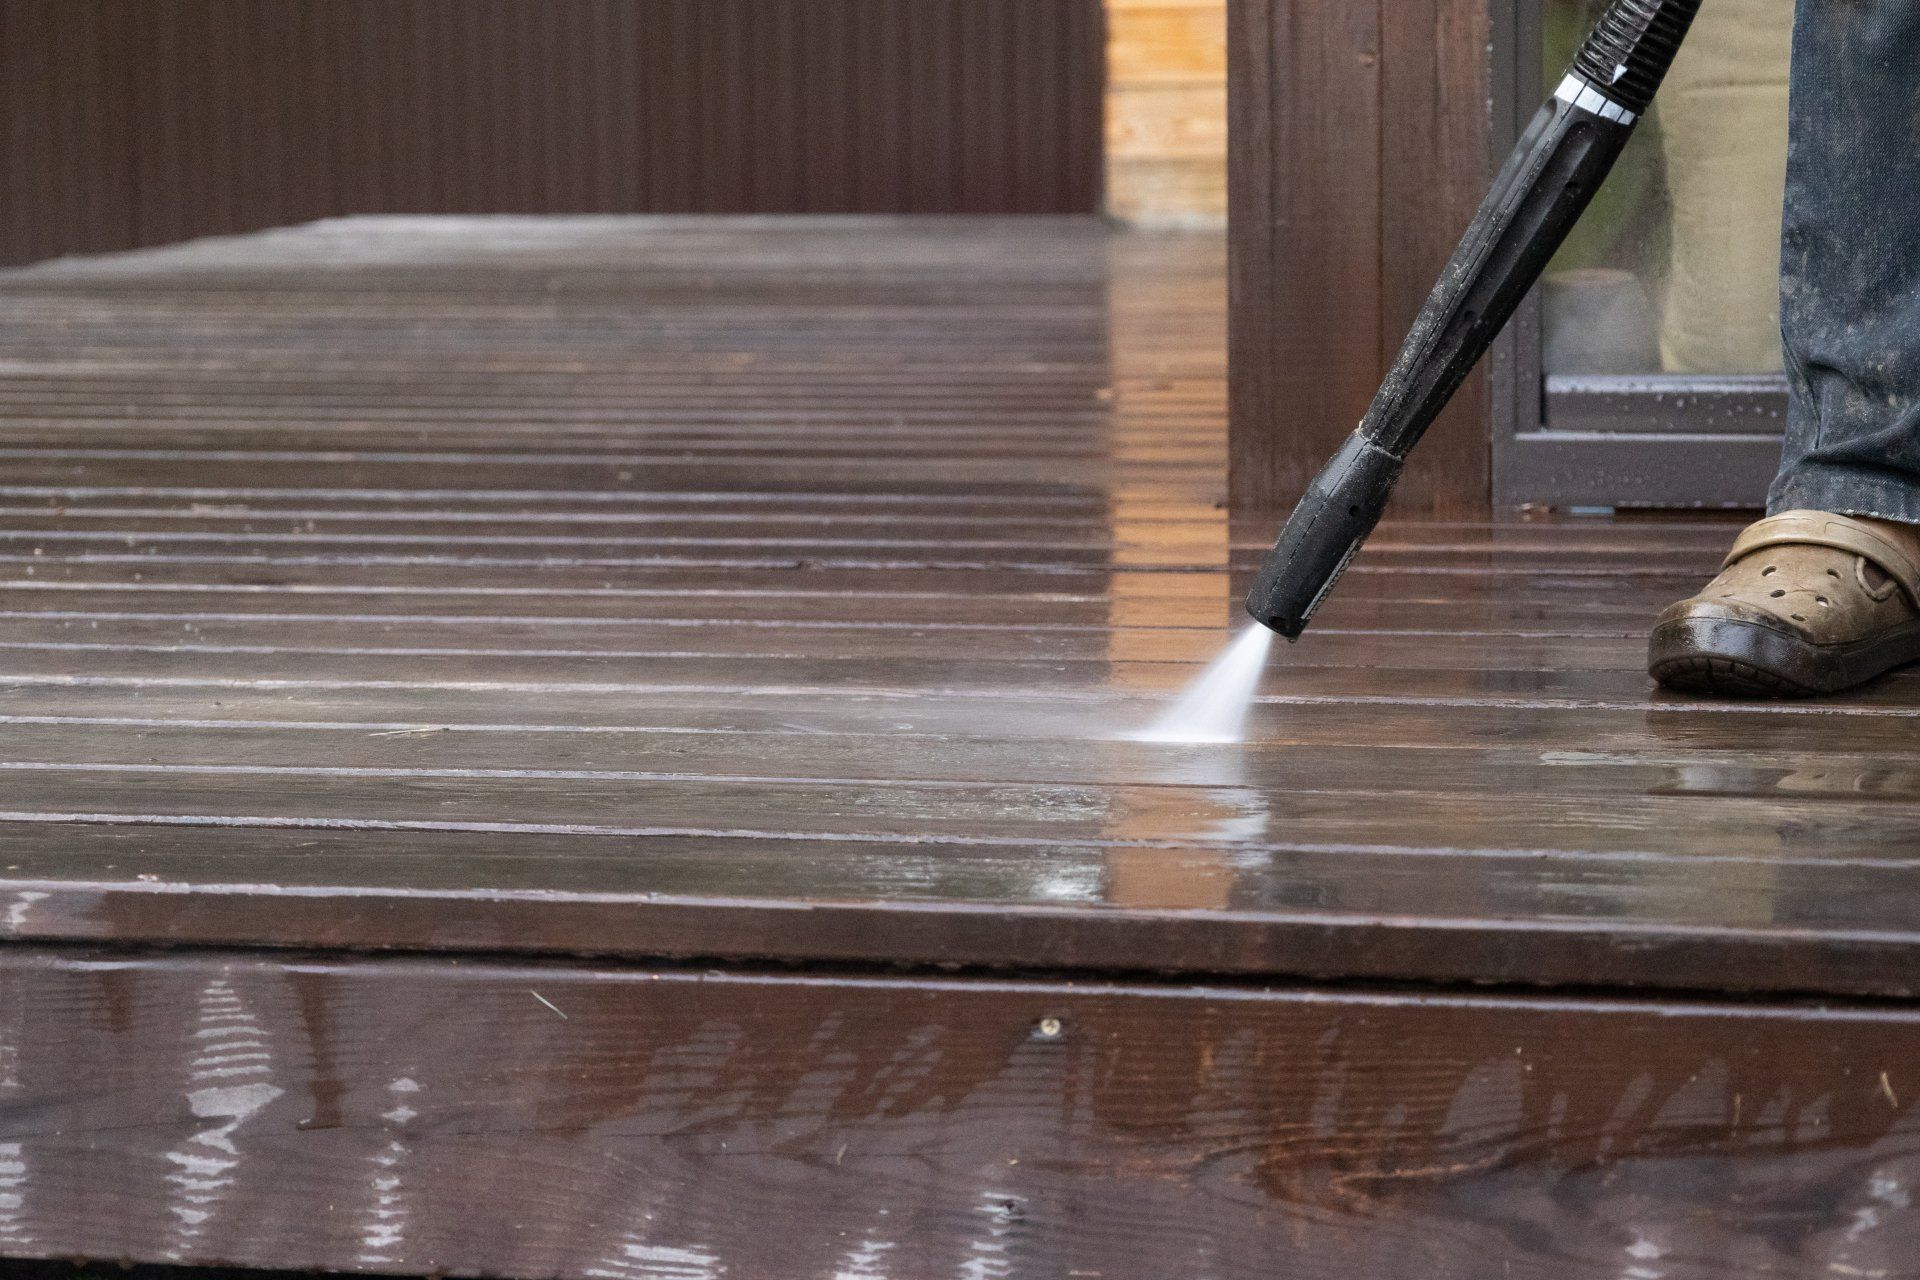 pressure washing wooden deck on Northwest Arkansas with pressure washer